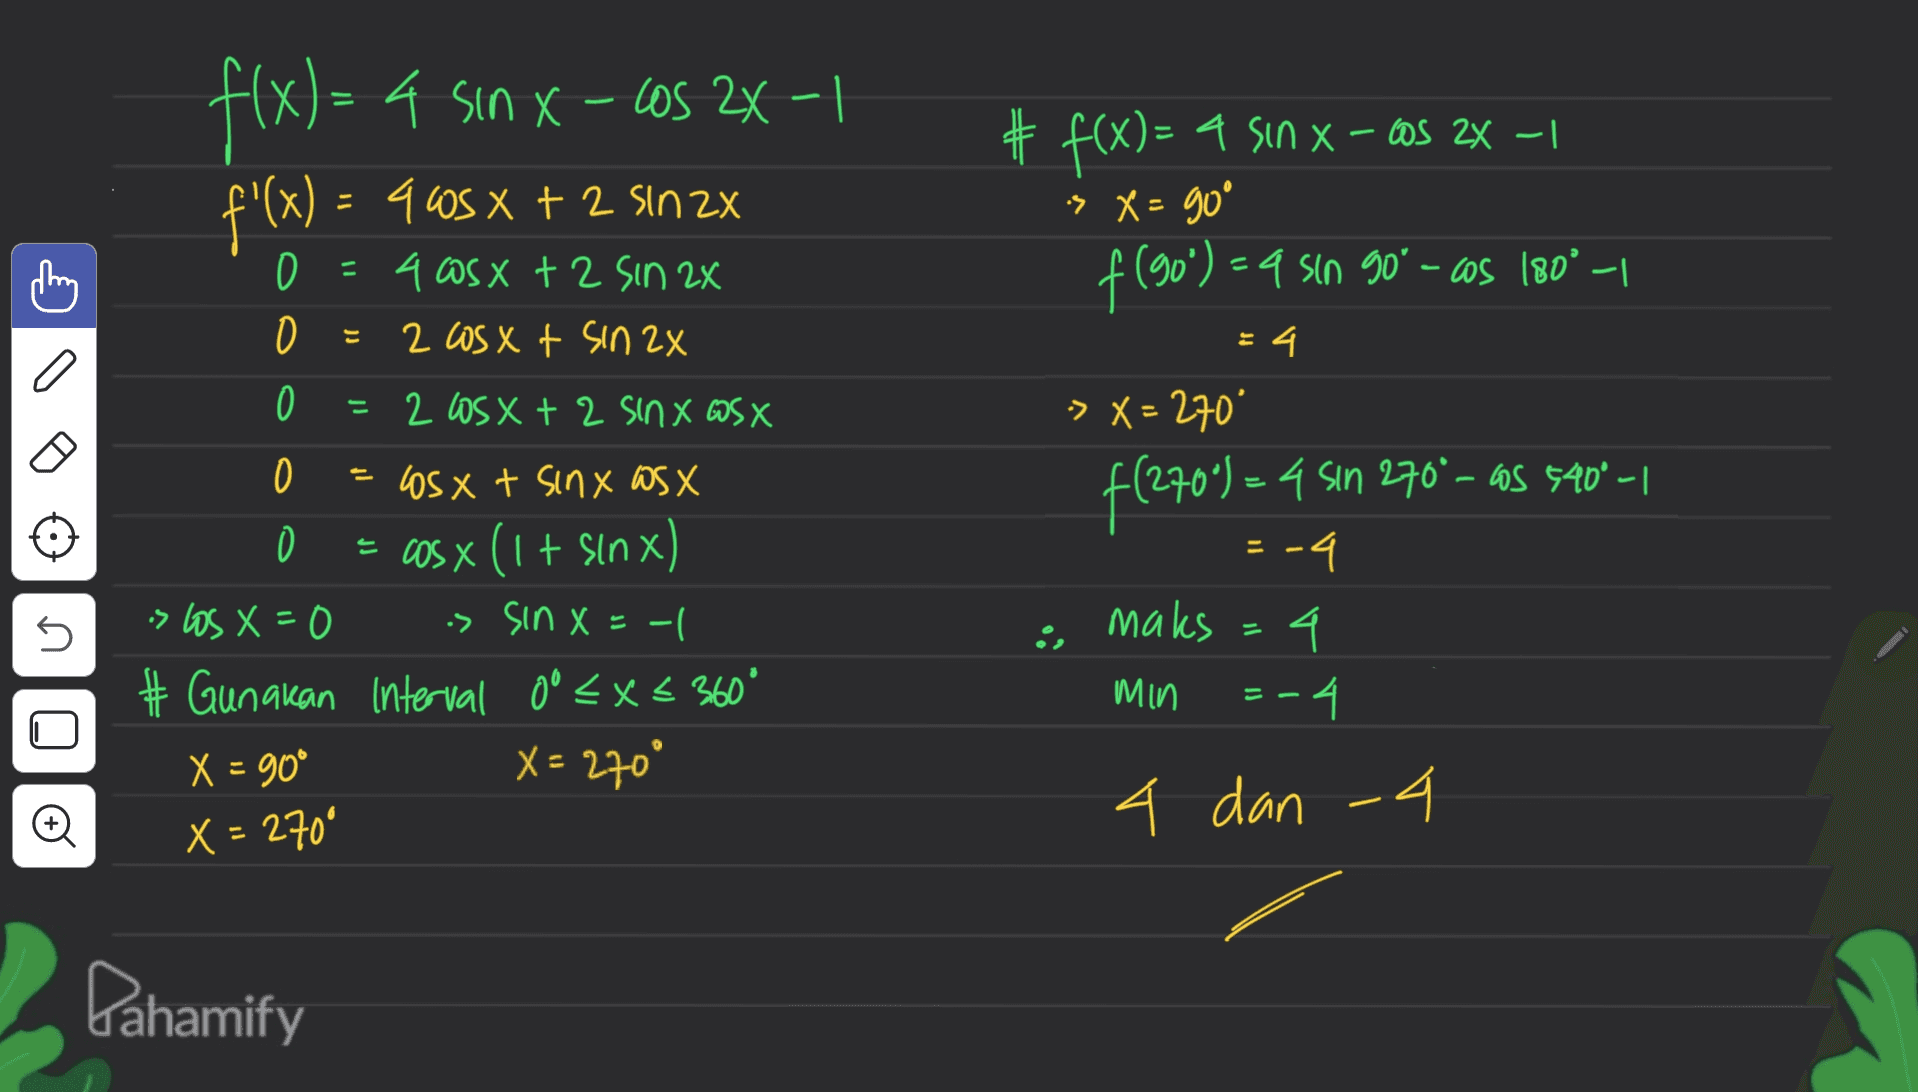 - X Los f(x) = 4 sin X-C05 2x-1 f'(x) = 965 x + 2 sin 2x ) # f(x)= a sin x - cos 2x – 1 > X = go D + 2 = 4 asx + 2 sin 2x 2 cos xt sin 2x f (50%) ) – a sin 90° - cos 180° -1 O 4. 0 = 2 Los x + 2 Sinx WS X = f(270) = 4 sin 270°-os 540° -1 -> X = 270* .4 -4 maks 4 Min -4 = 0 os x t sinx WSX = cos x (1 + sin x) is los X=0 is sin X=-| - # Gunakan Interval 0° < X < 360° X = 90° X = 270° U E == U Ø 4 dan 4 X = 260° Pahamify 